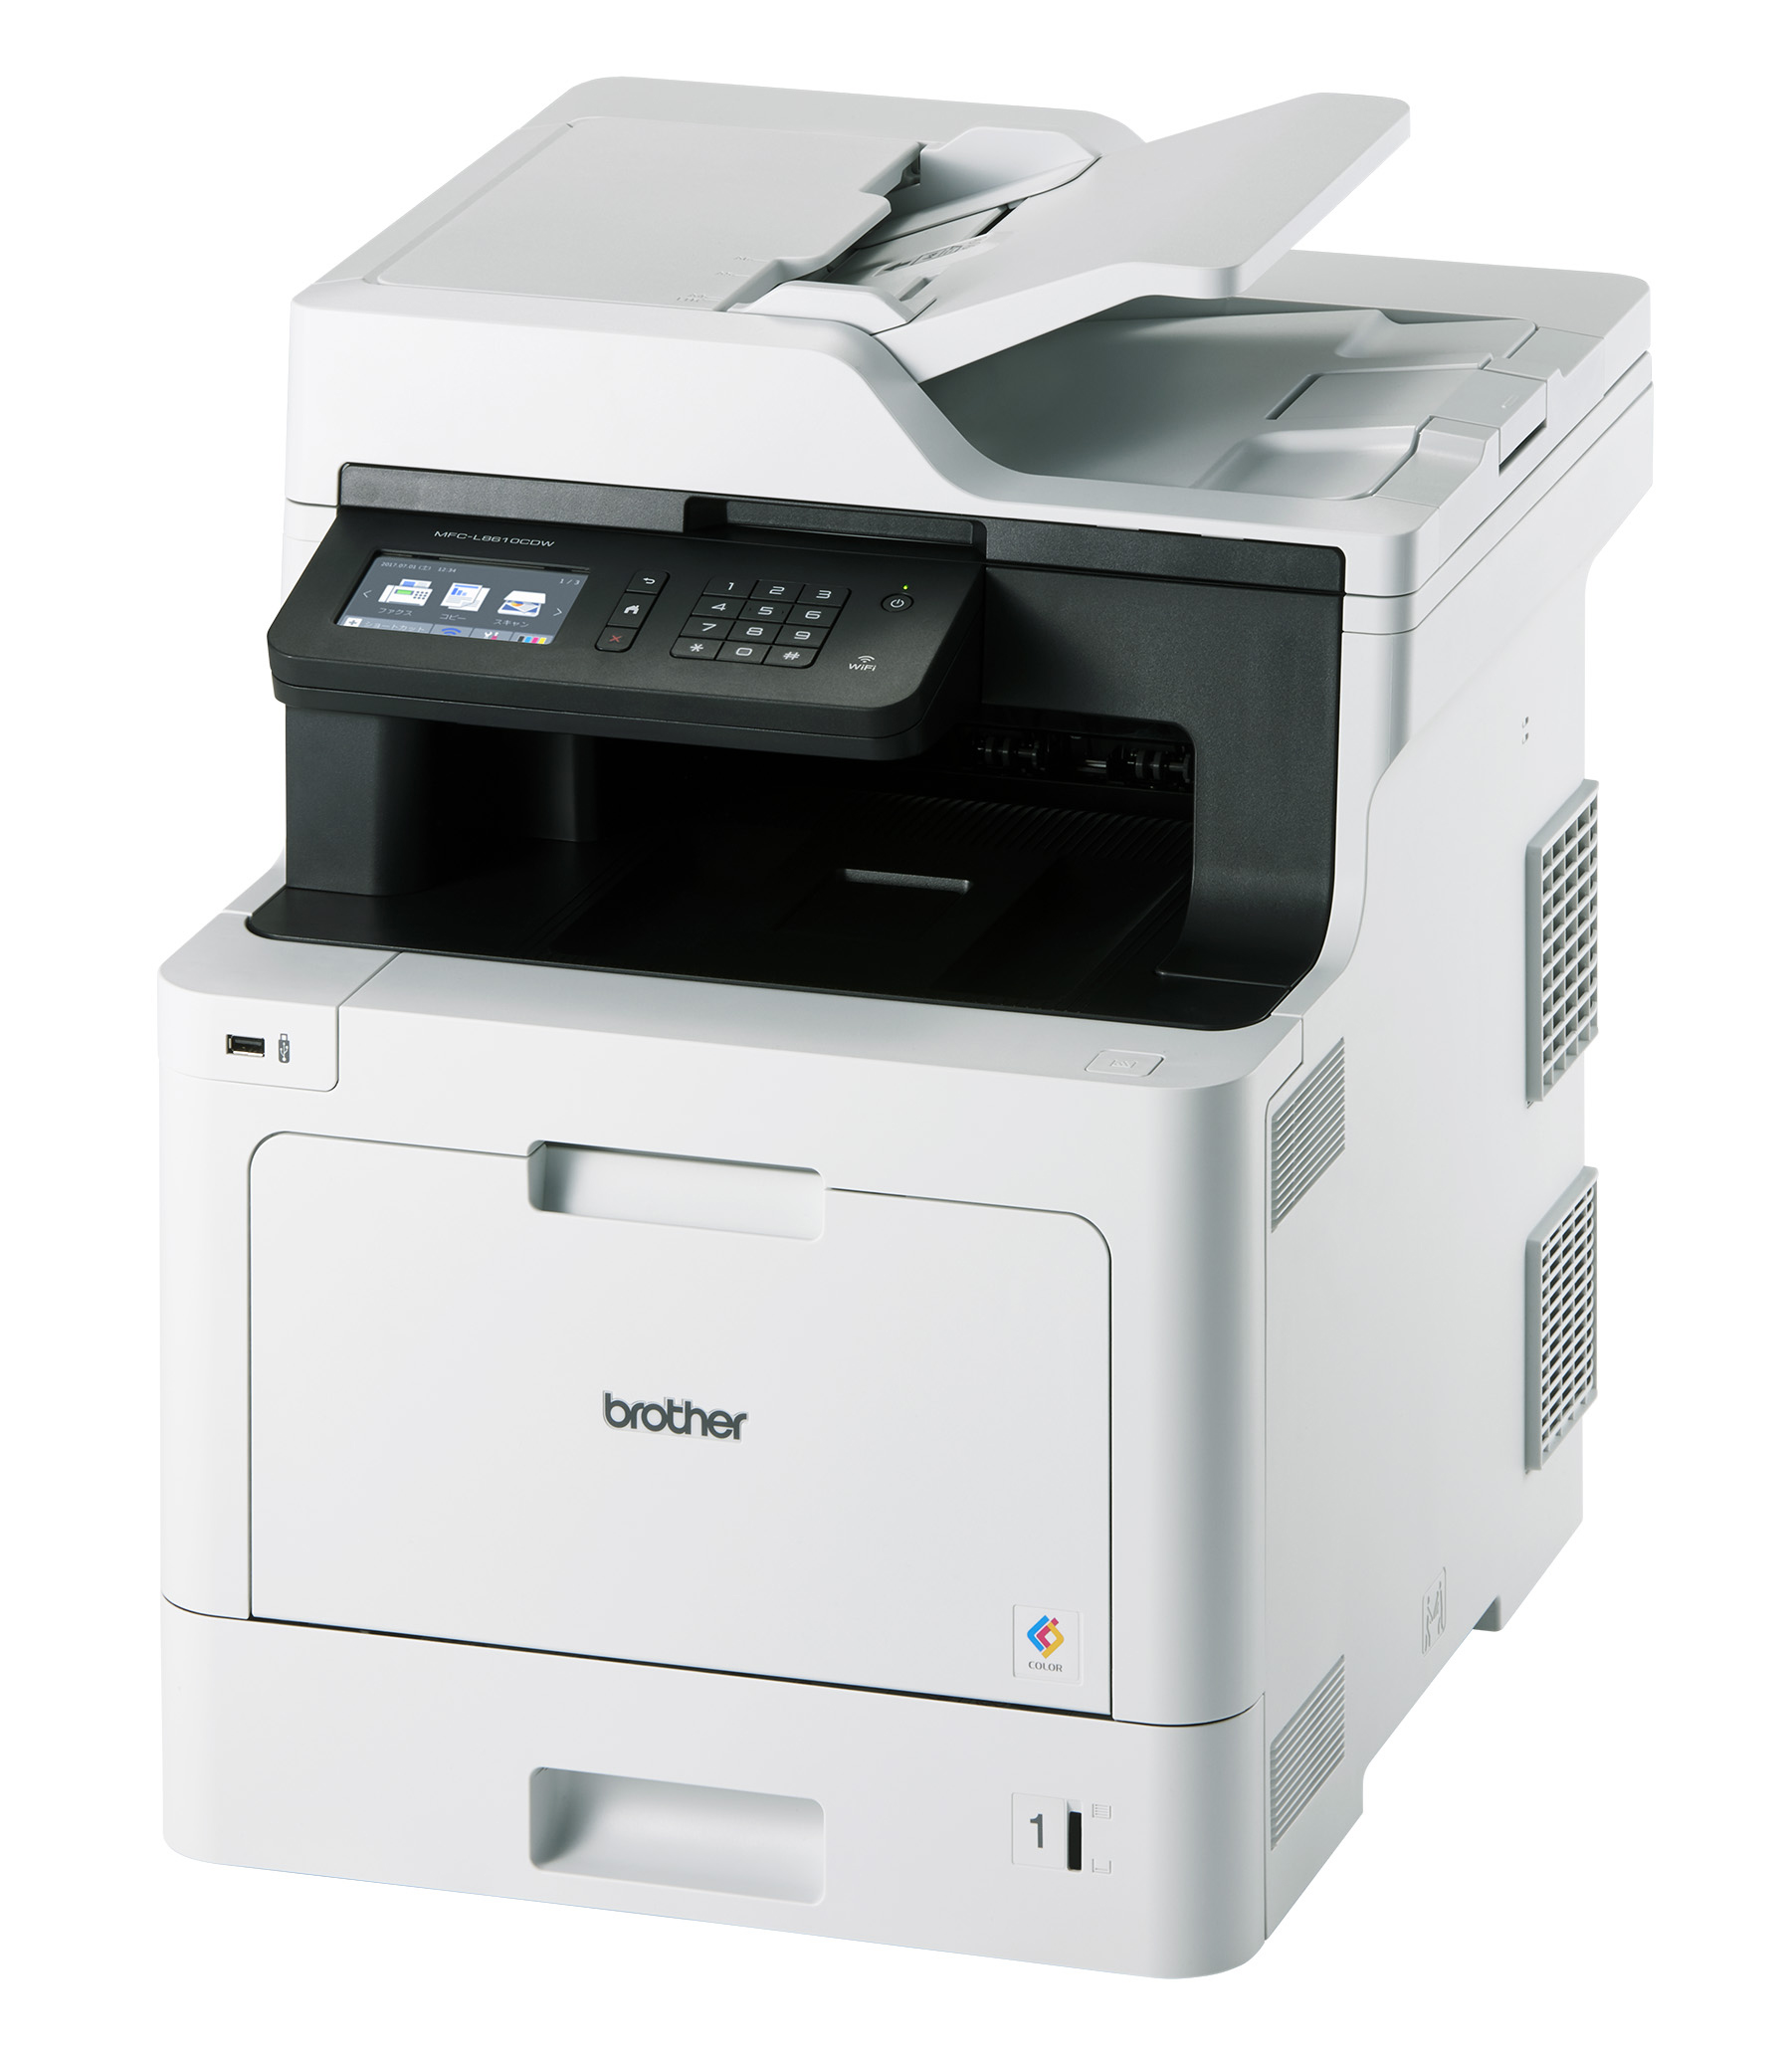 2017-05-17 印字品質の向上でより明るく鮮やかなカラー印刷を実現 A4カラーレーザープリンター・複合機「JUSTIO」4機種新発売｜ブラザー